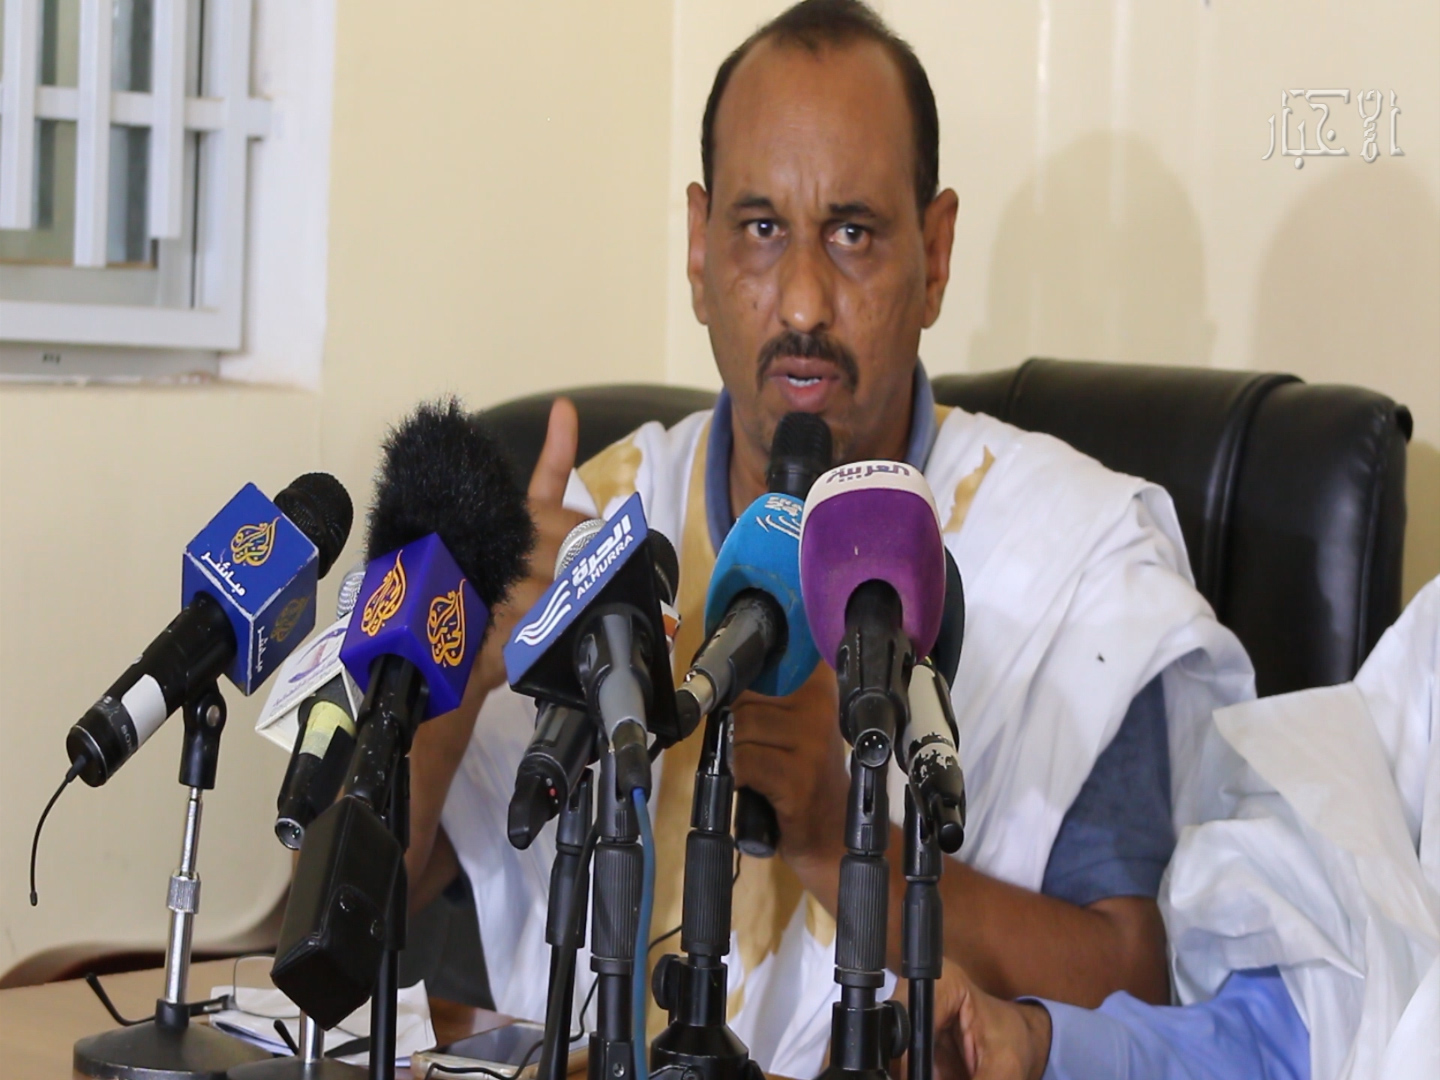 رئيس حزب "الصواب" الدكتور عبد السلام ولد حرمه خلال مؤتمر صحفي سابق (الأخبار - أرشيف)